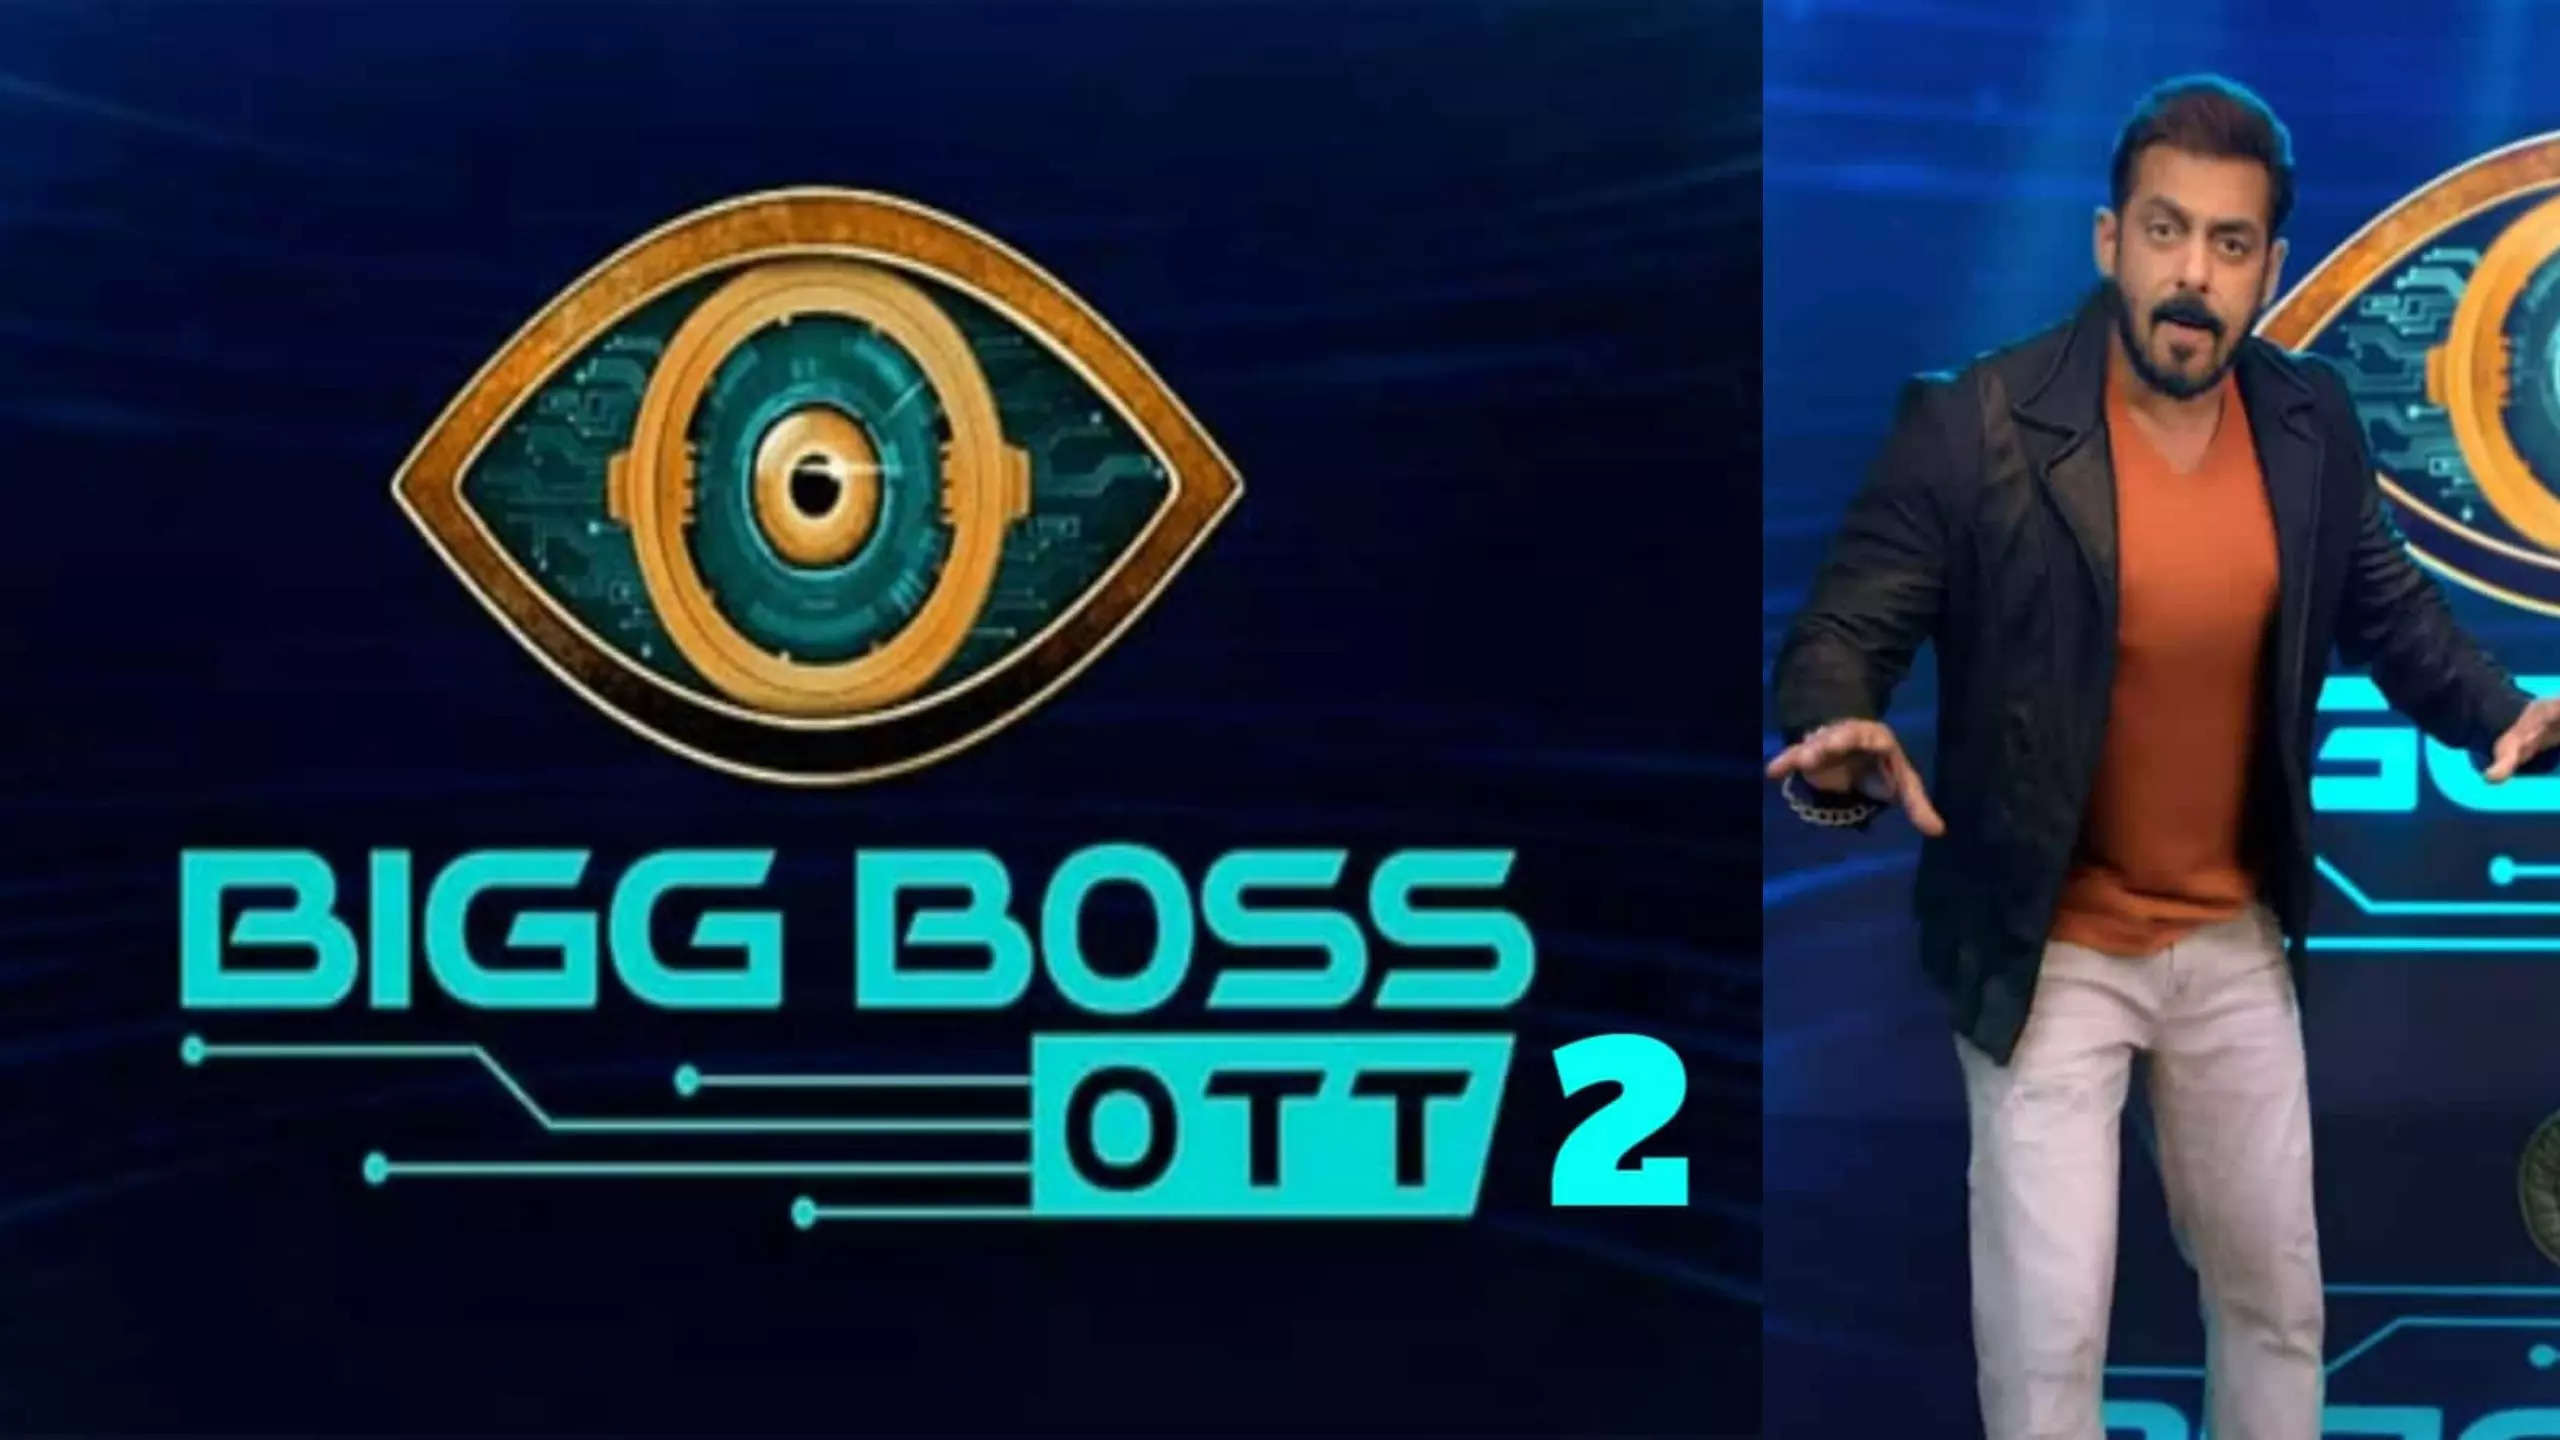 Bigg Boss OTT season 2